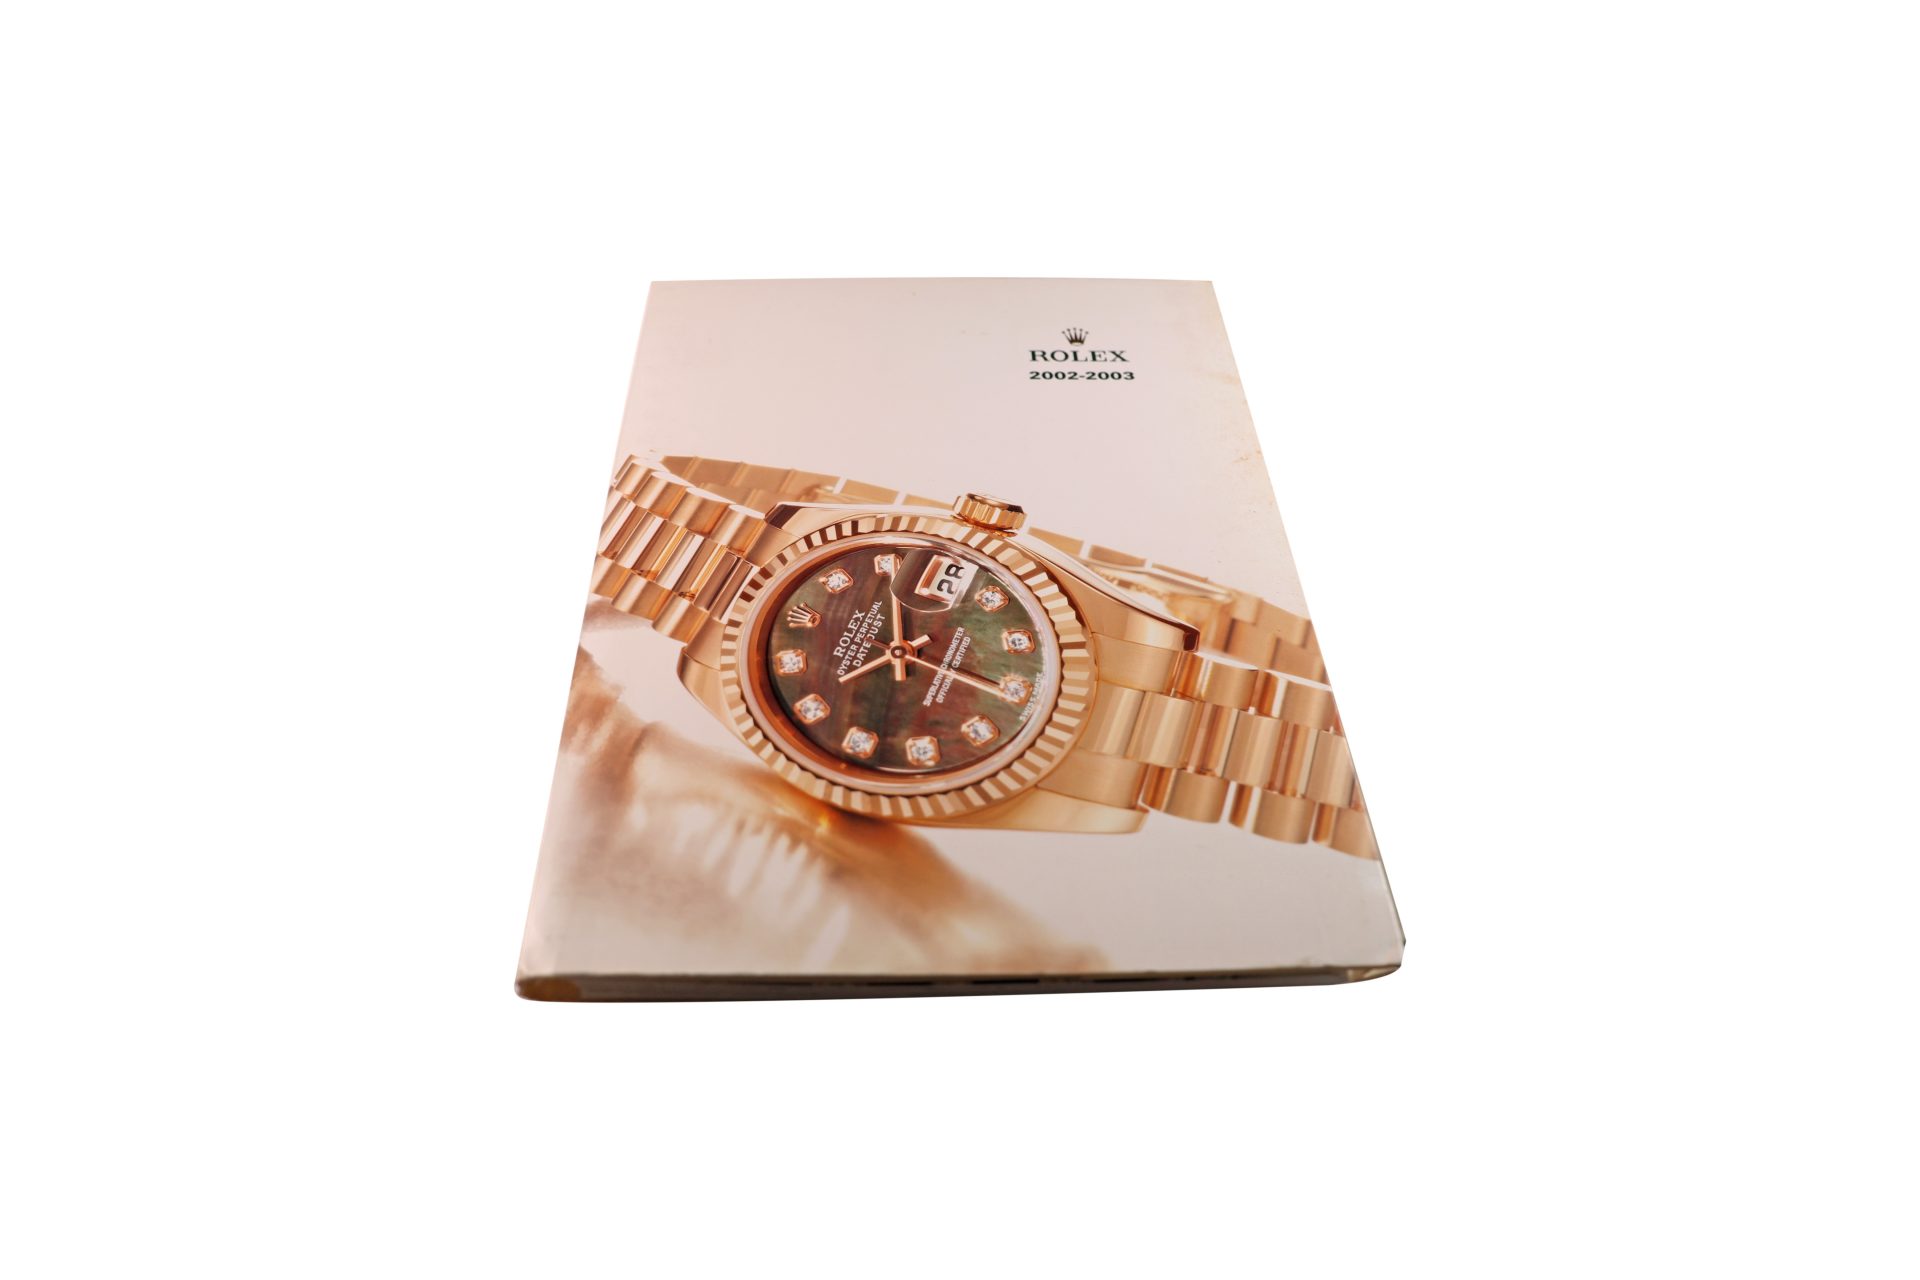 Rolex-2002-–-2003-Master-Dealer-Watch-Catalog-1 - Rare Watch Parts